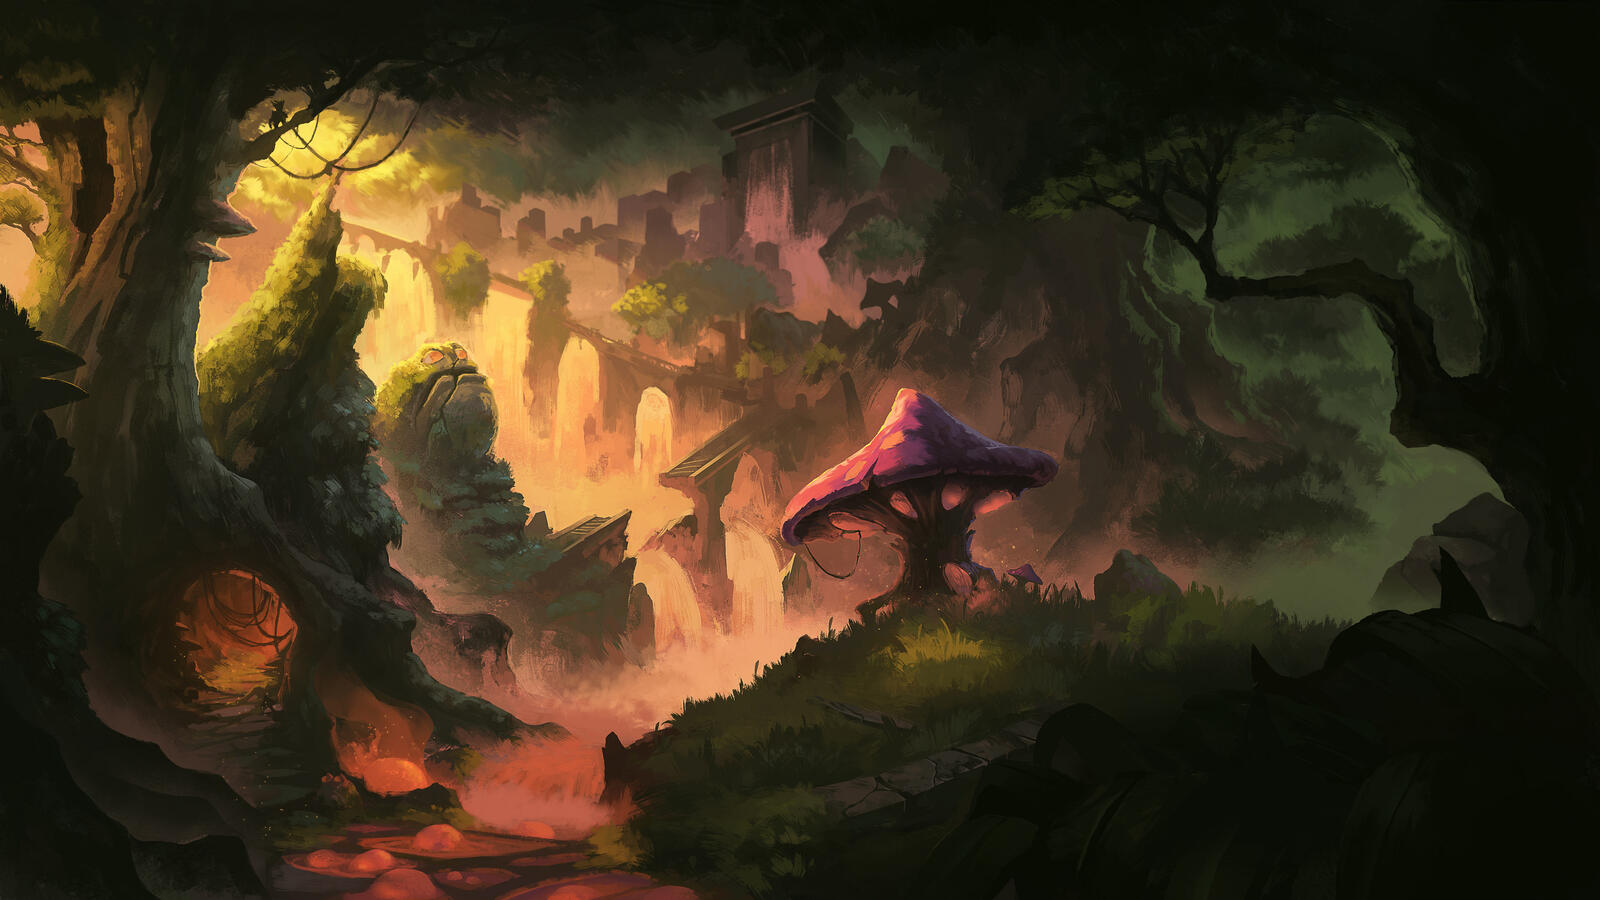 Бесплатное фото Фэнтезийный темный лес с большим грибом